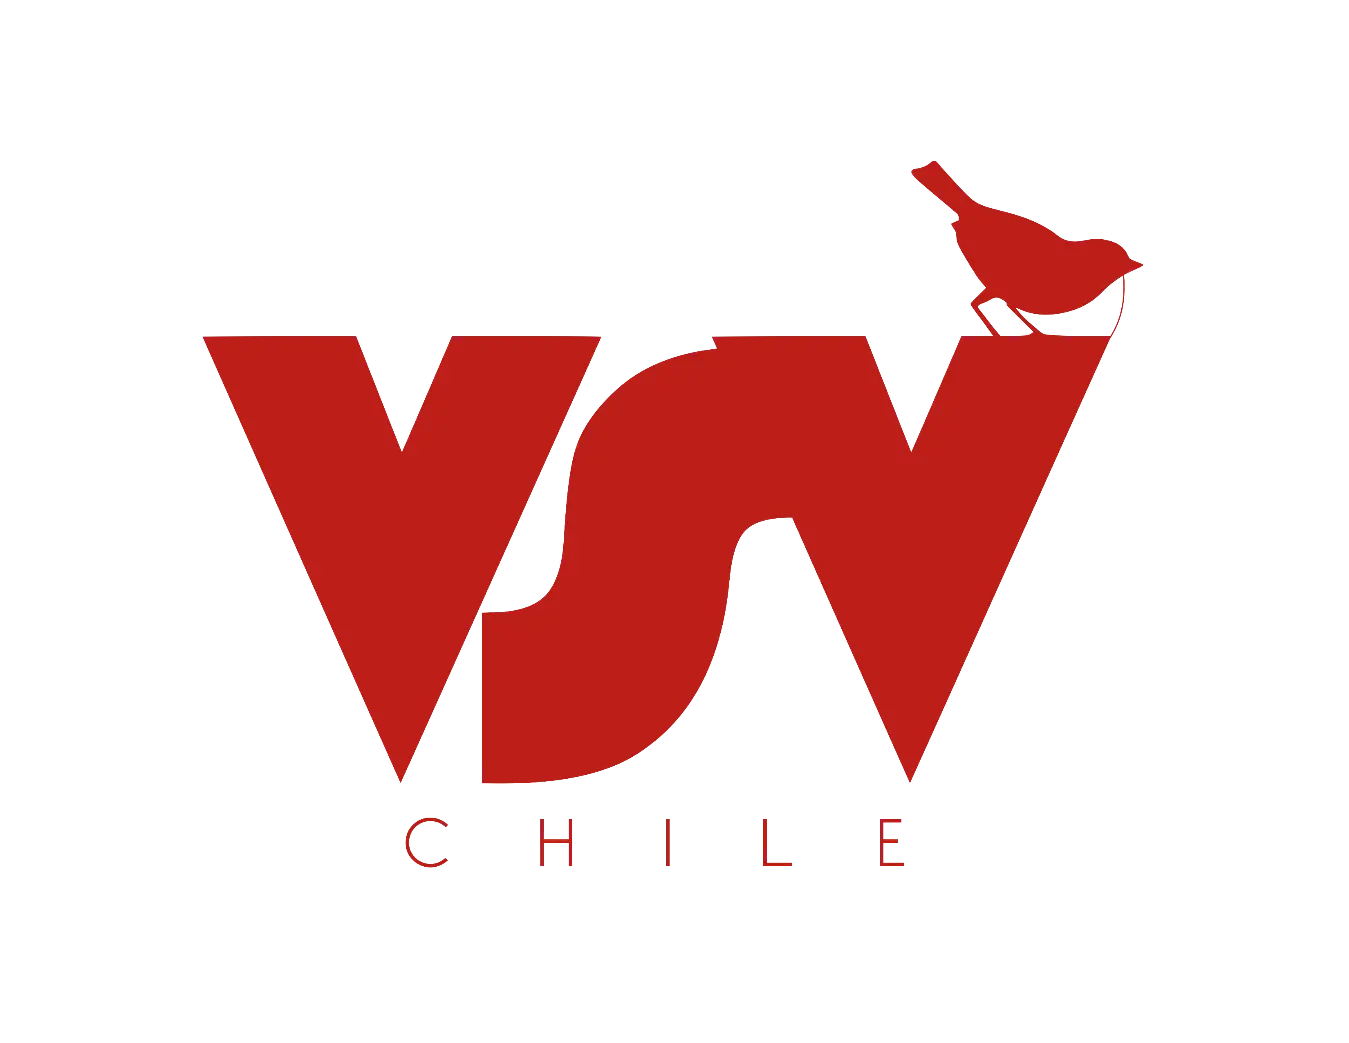 VSV Chile